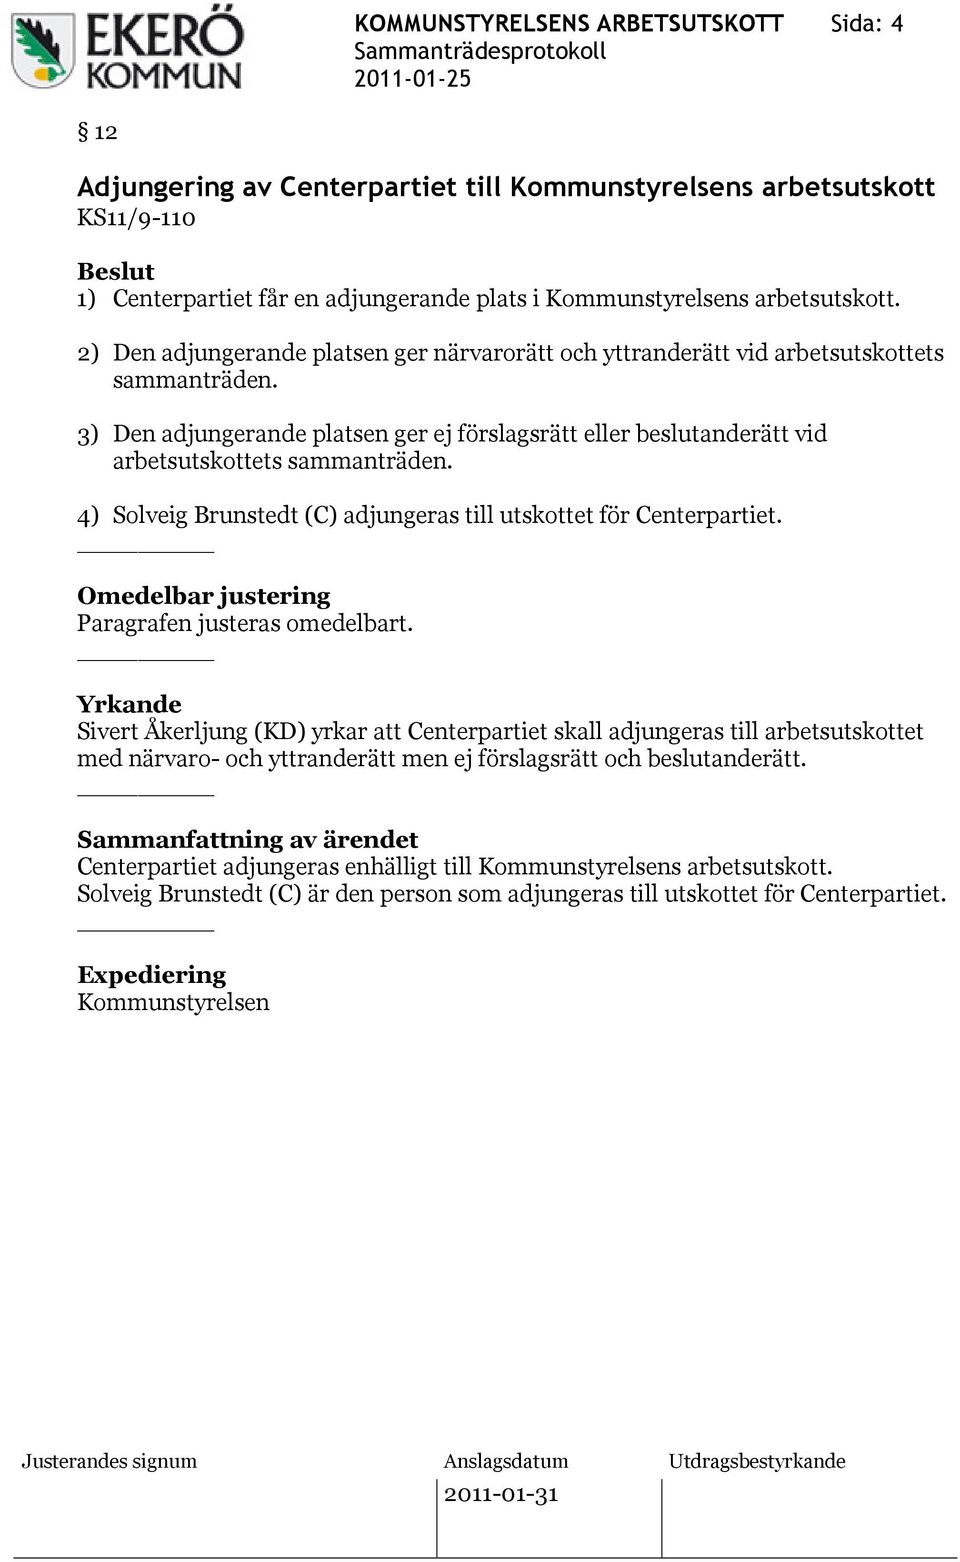 3) Den adjungerande platsen ger ej förslagsrätt eller beslutanderätt vid arbetsutskottets sammanträden. 4) Solveig Brunstedt (C) adjungeras till utskottet för Centerpartiet.